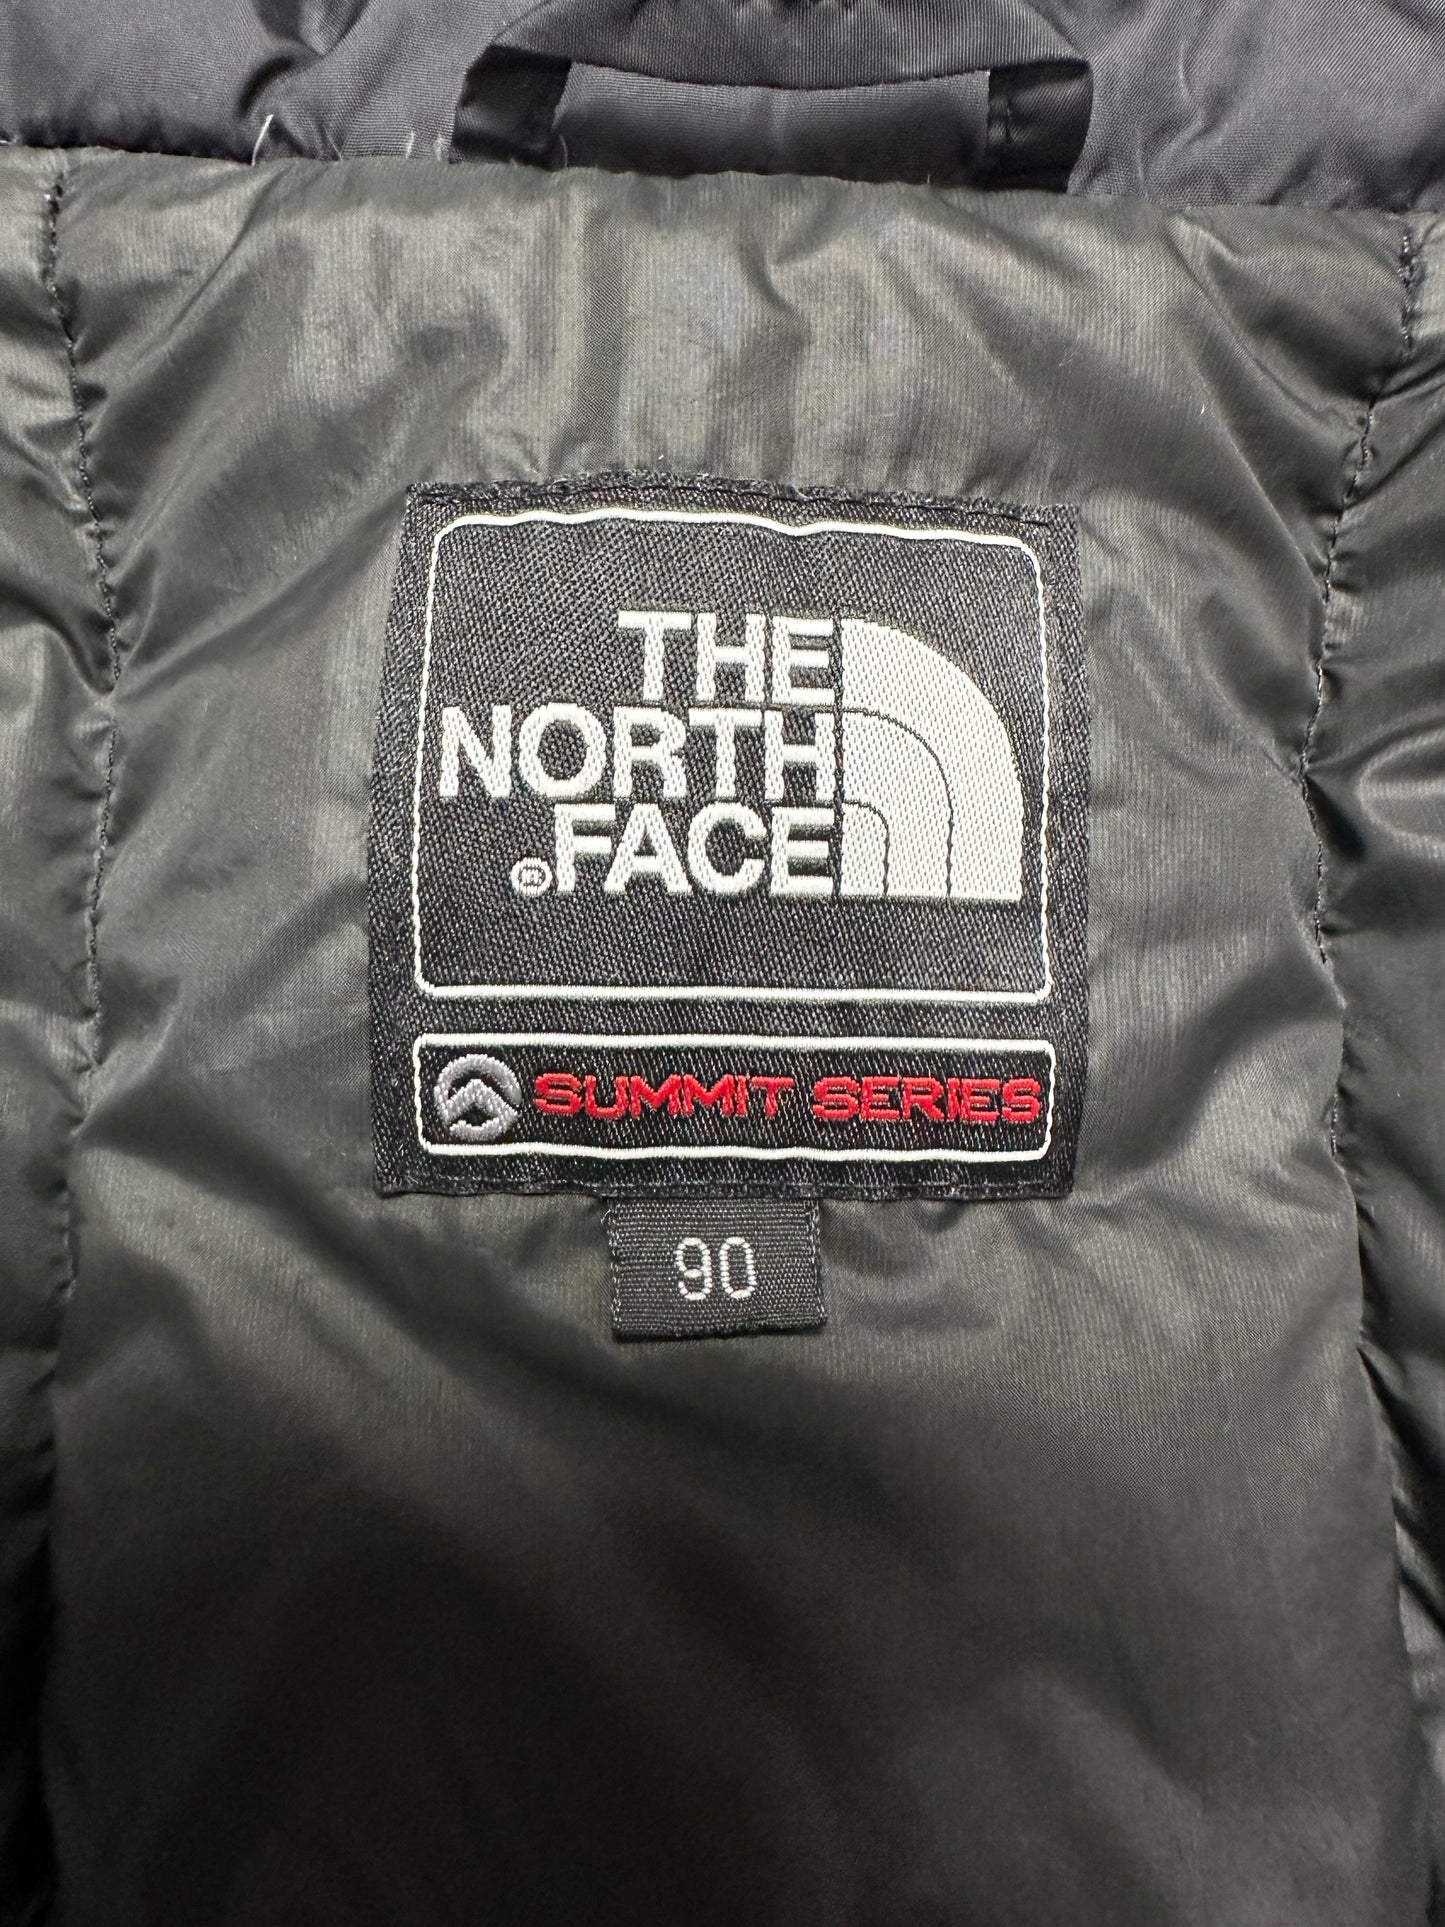 10059【THE NORTH FACE】ザノースフェイス サミットシリーズ ダウンジャケット シルバー 90